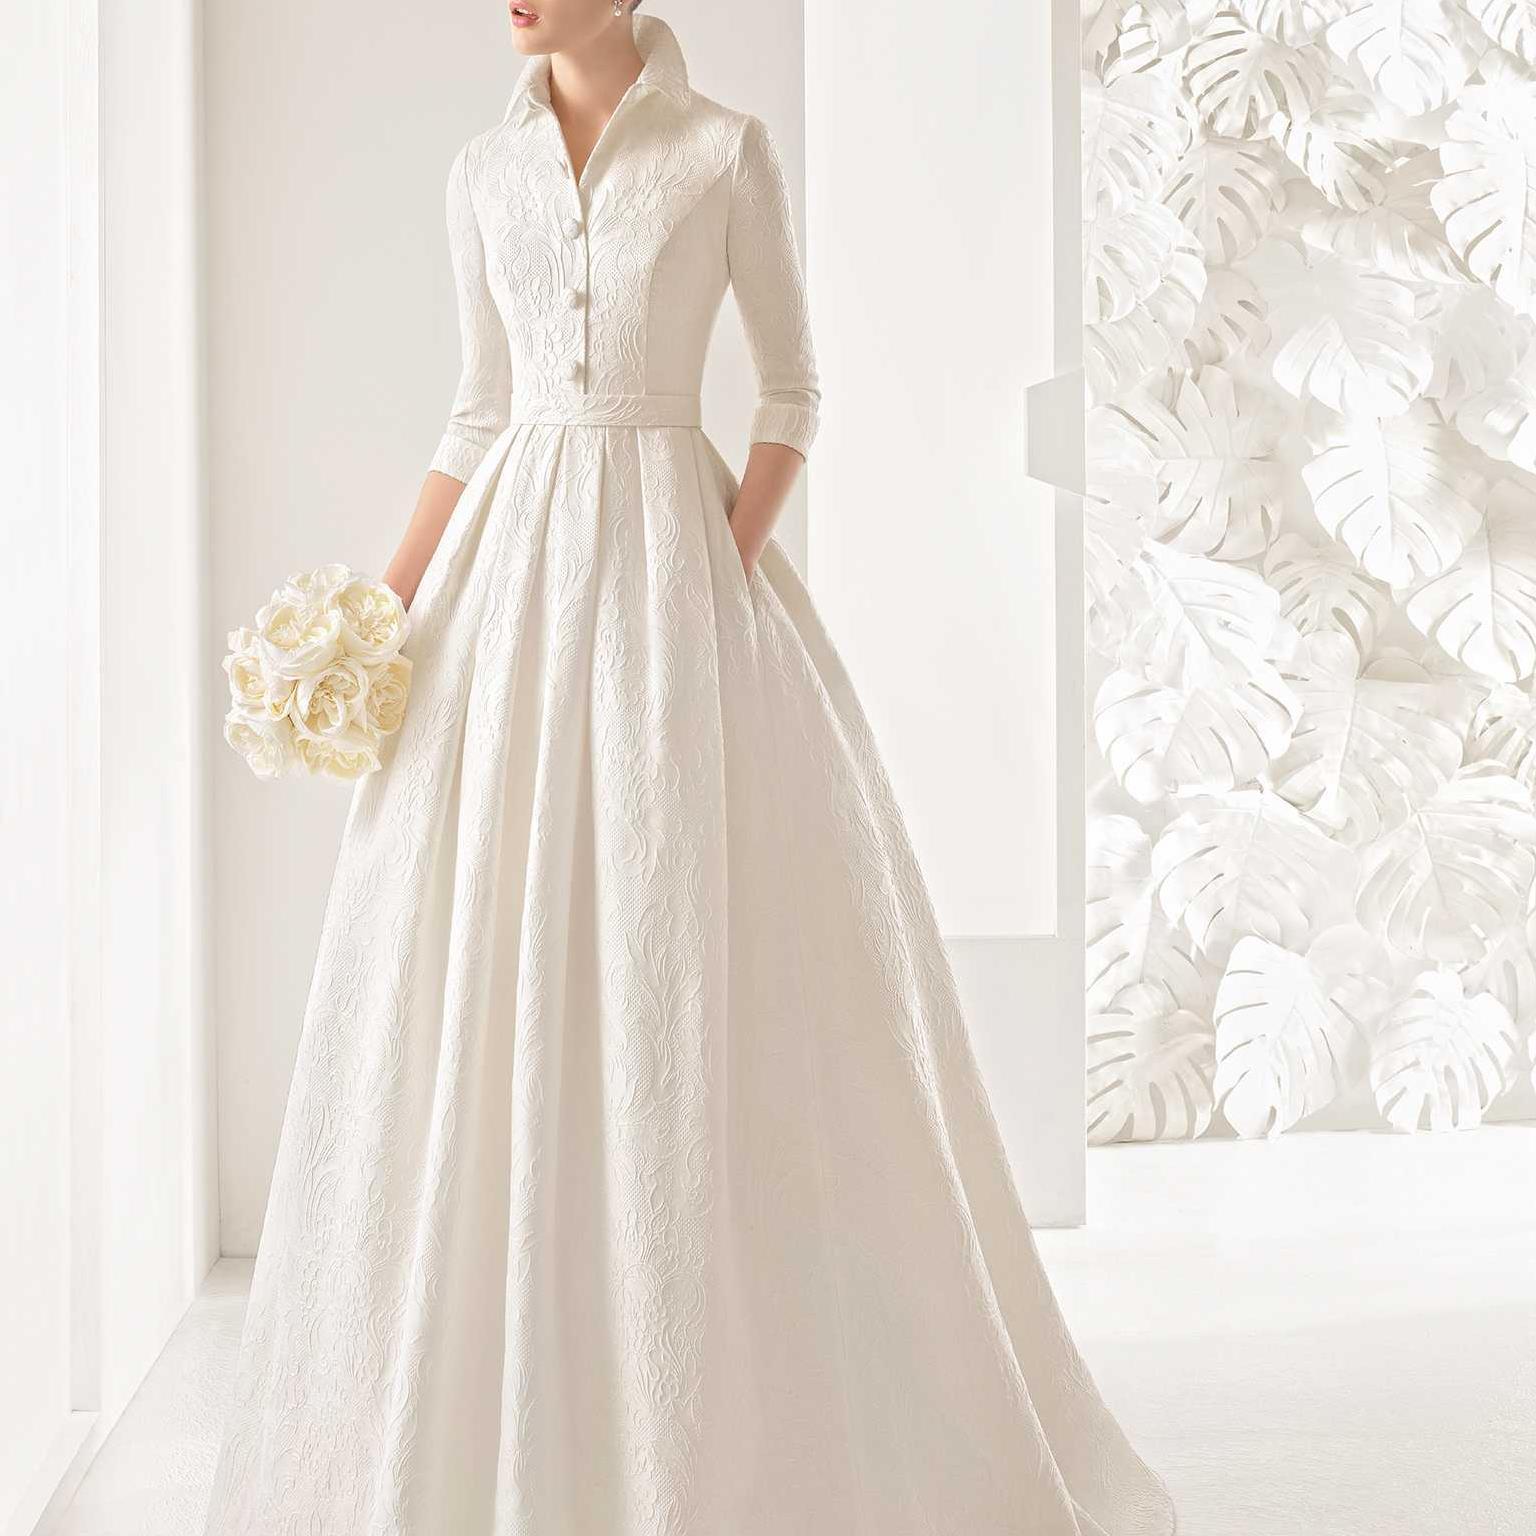 جدیدترین مدل لباس عروس براساس فرم اندام